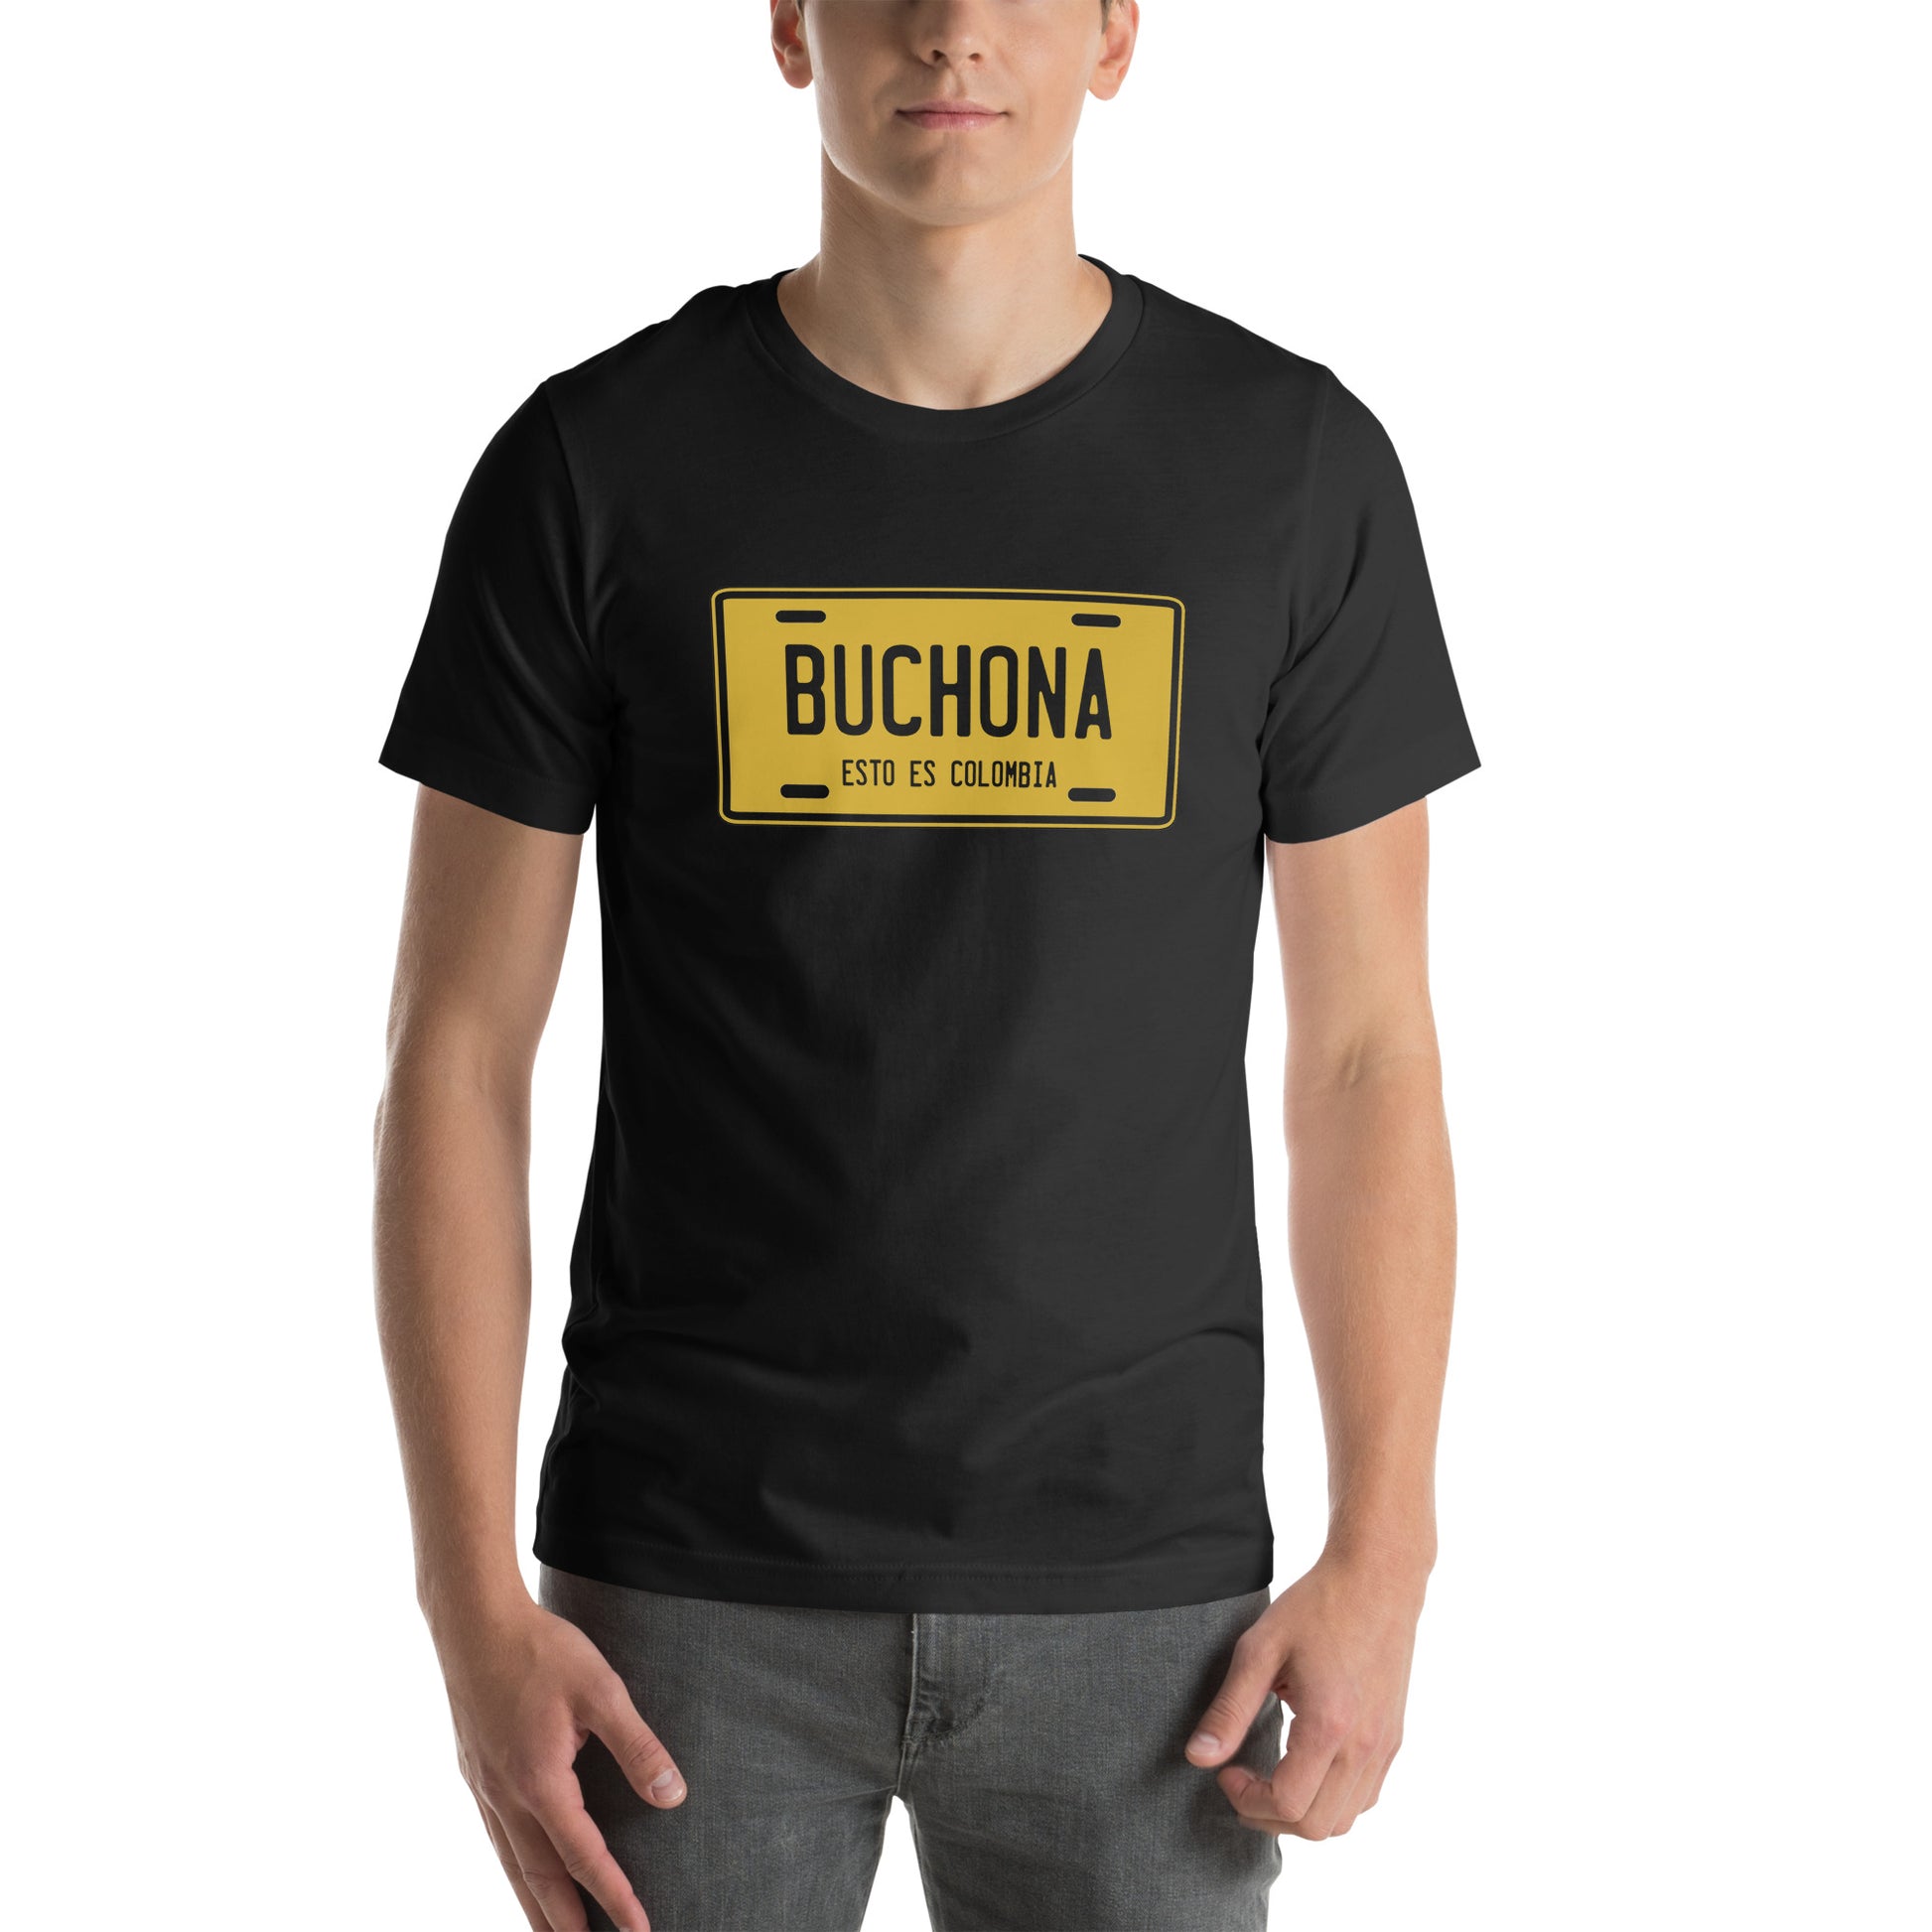 Camiseta Buchona Descubre calidad excepcional y estampados duraderos. Encuentra estilo y orgullo en cada prenda.